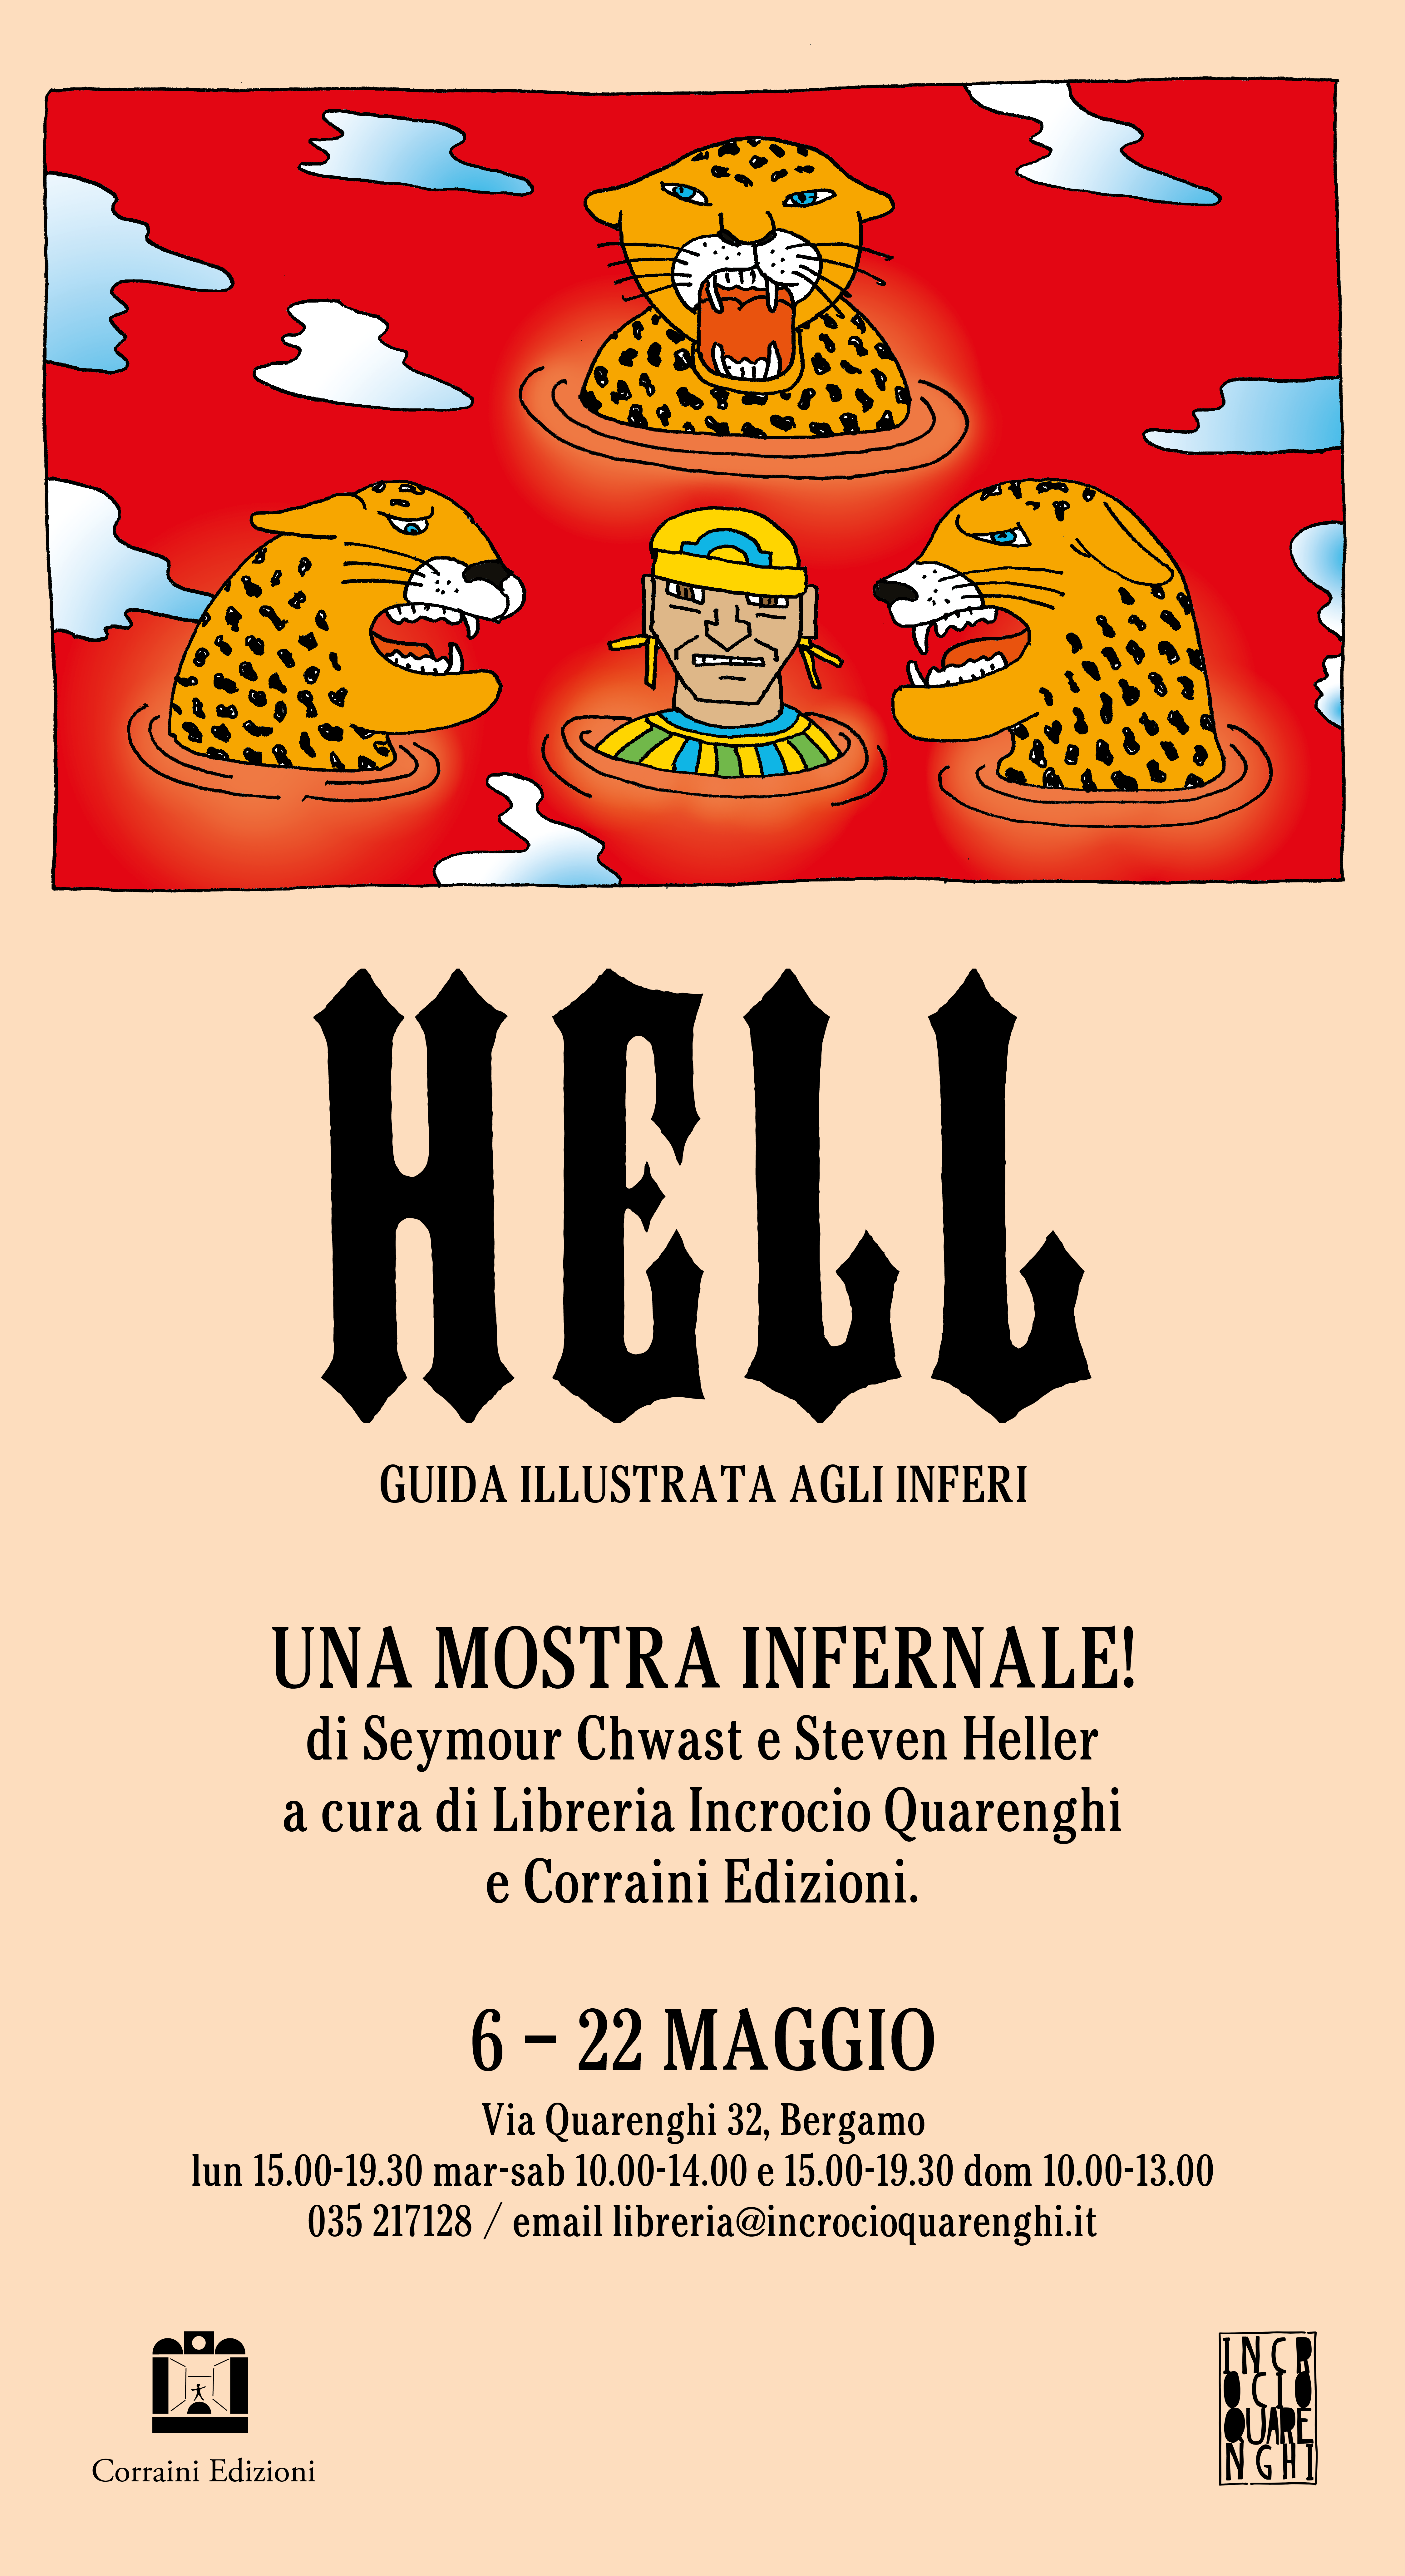 HELL una mostra infernale! Guida illustrata agli inferi, in collaborazione con Corraini Edizioni